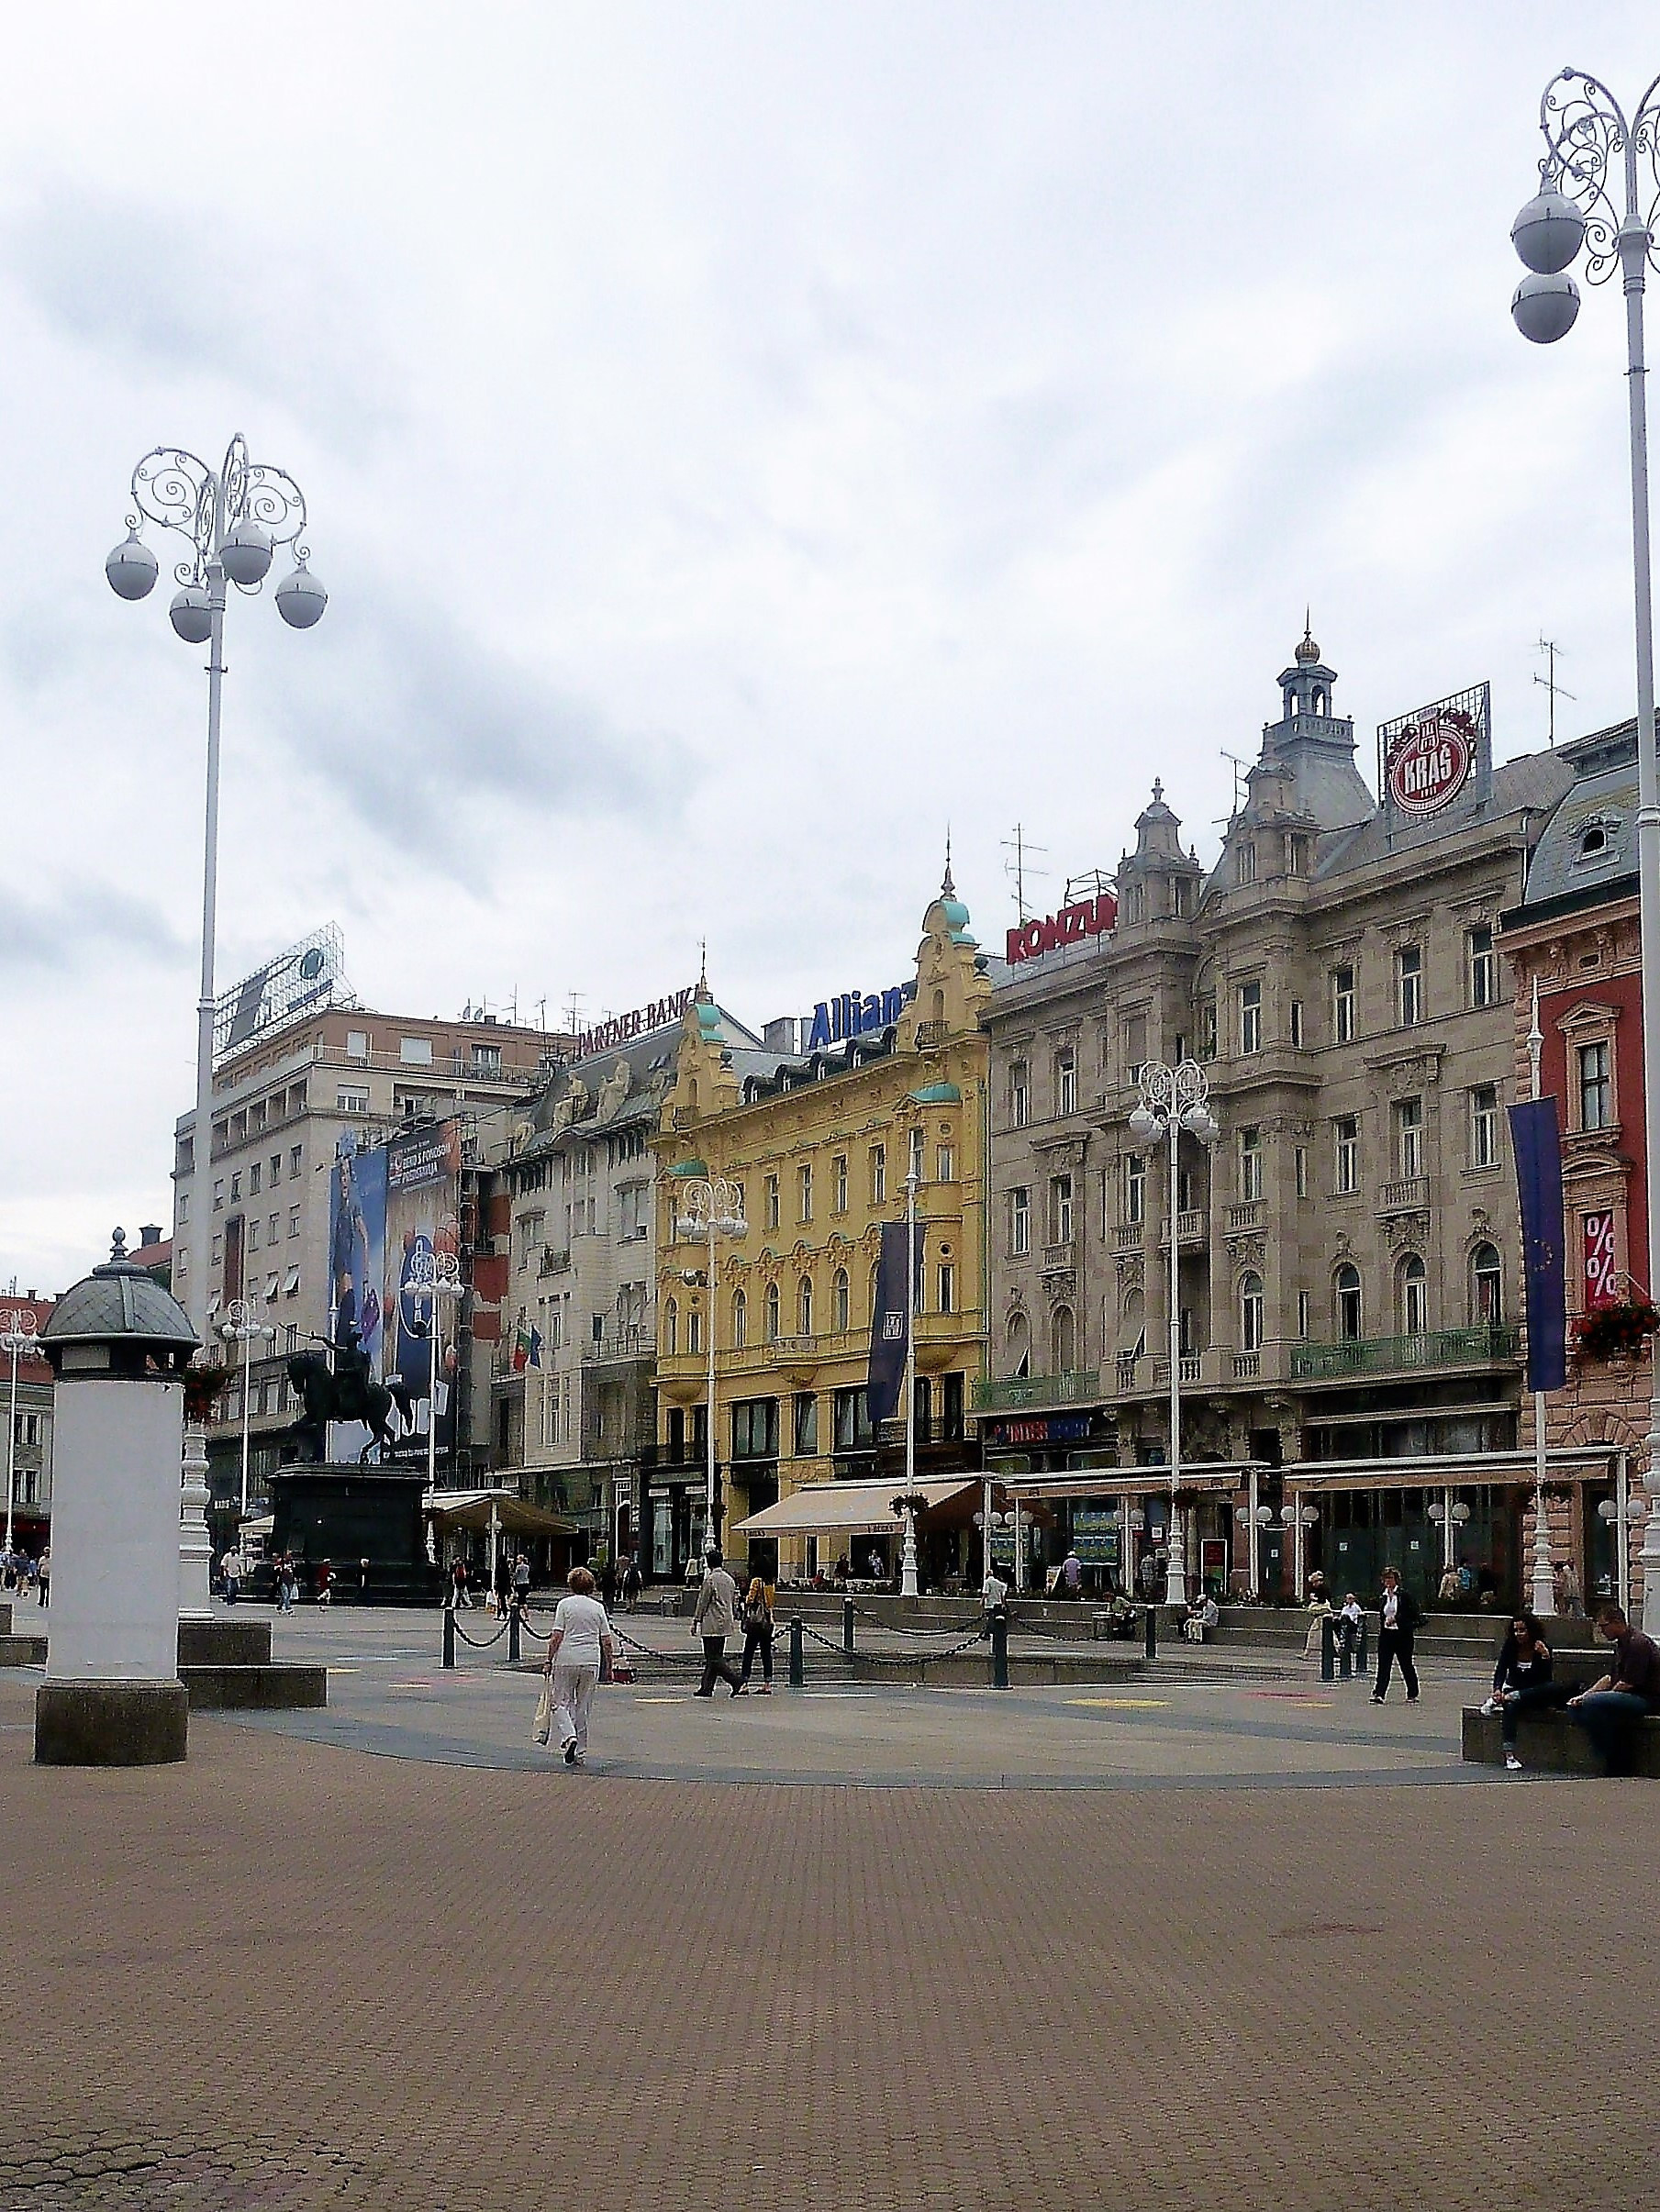 Ban Jelacic square,main square in Zagreb,